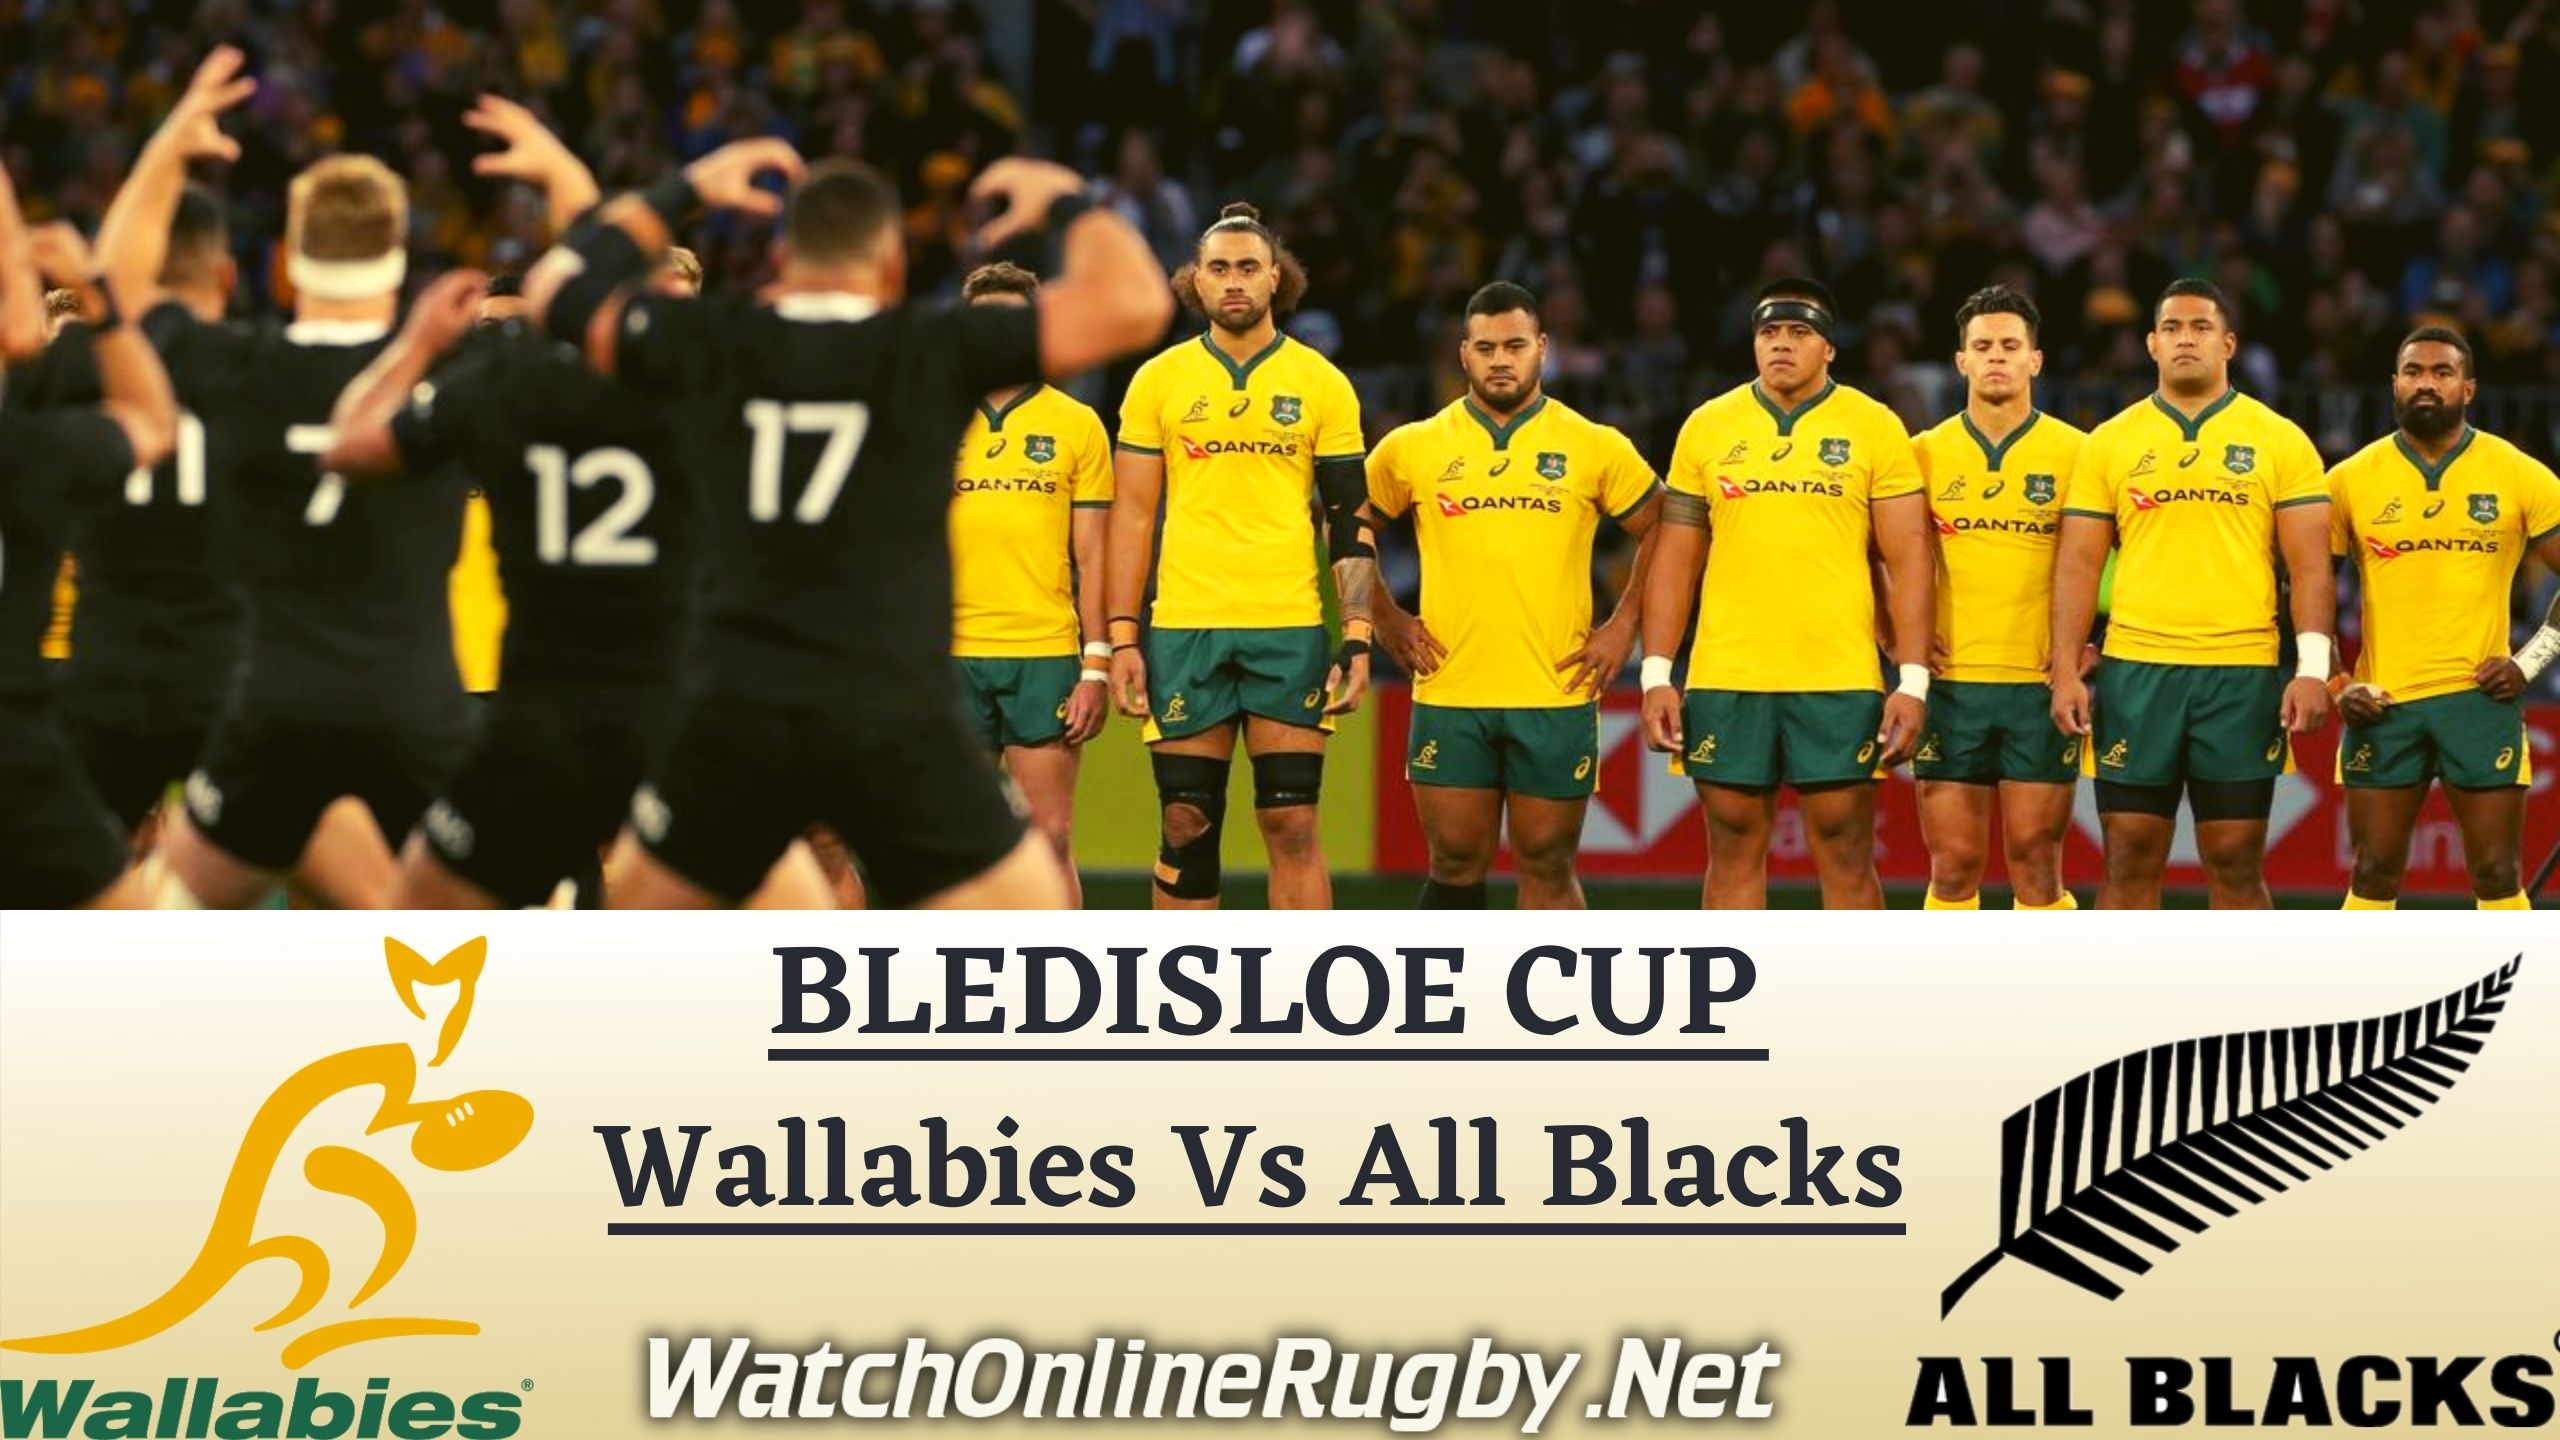 Wallabies vs All Blacks Bledisloe Cup 2020